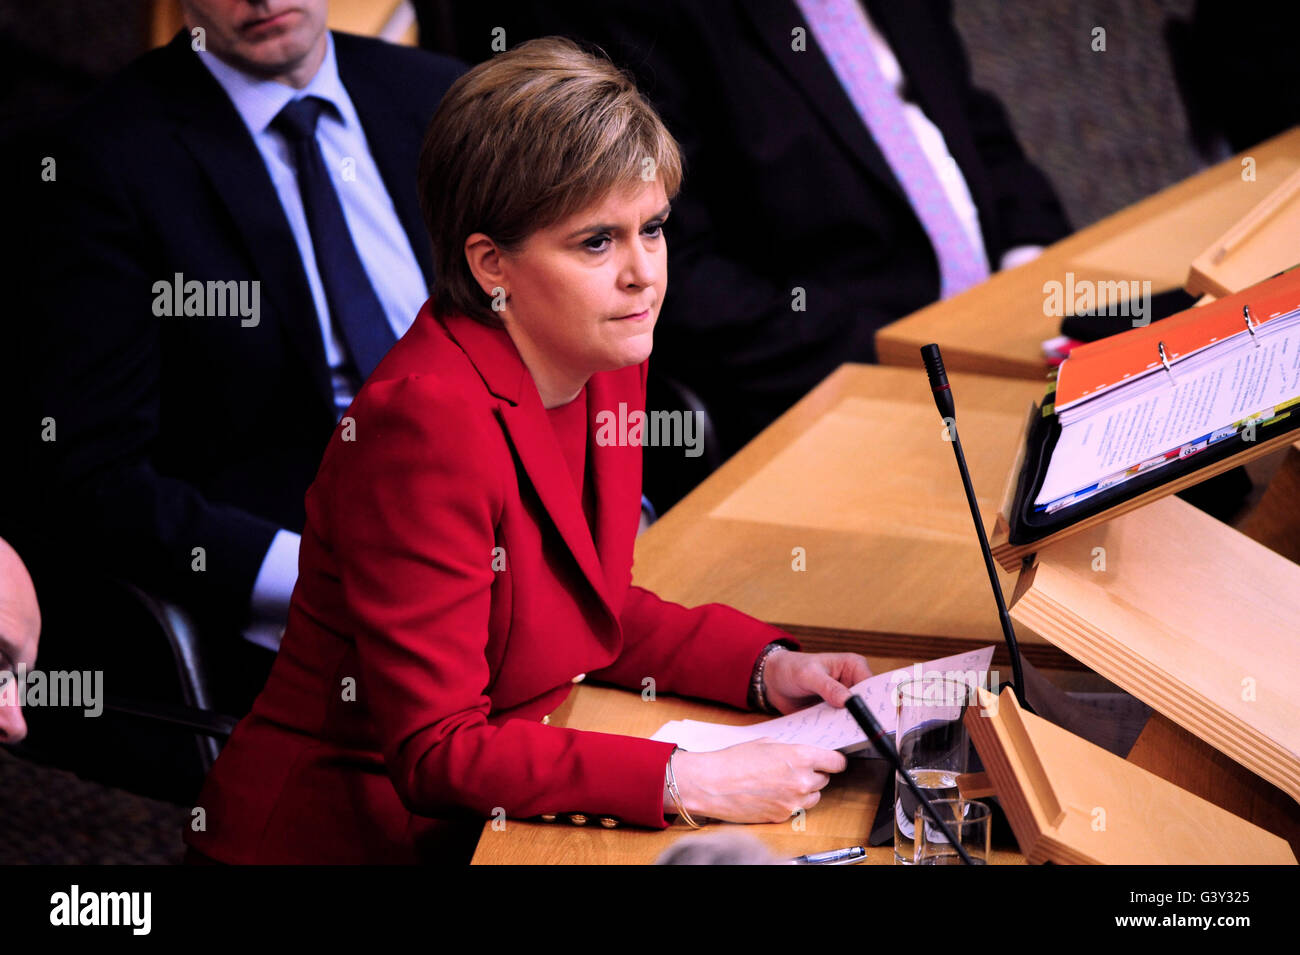 Edinburgh, Ecosse, Royaume-Uni, 16, juin 2016. Nicola Sturgeon pendant le premier ministre Questions au parlement écossais, à laquelle la question de l'Europe a joué un rôle de crédit : Ken Jack / Alamy Live News Banque D'Images